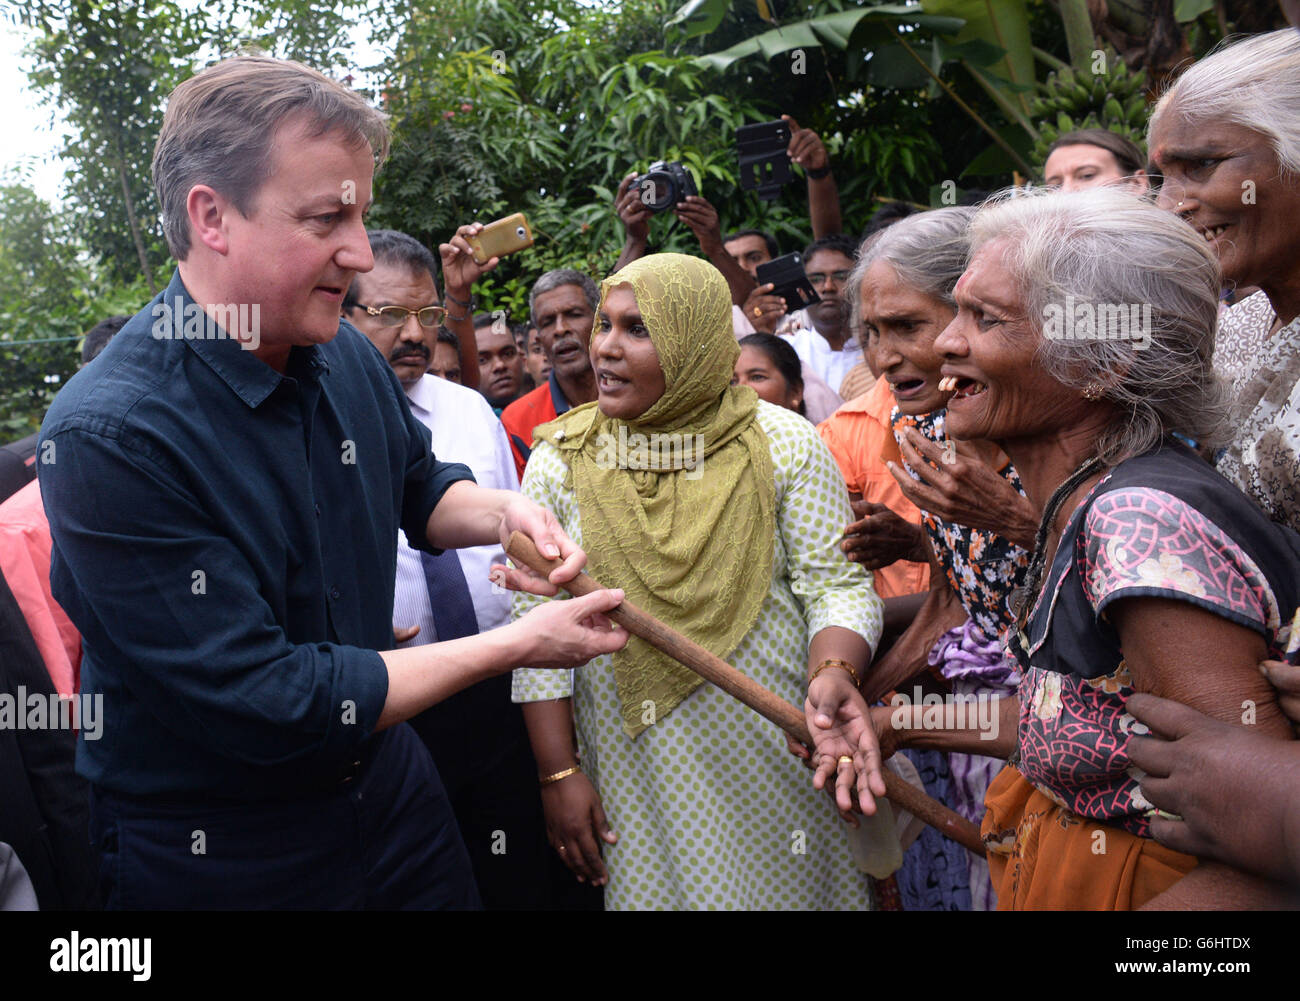 Le Premier ministre David Cameron rencontre le personnel du journal Uthayan de Jaffna, dans le nord du Sri Lanka, qui a été fréquemment attaqué par les forces gouvernementales pendant la guerre civile de 26 ans. Banque D'Images